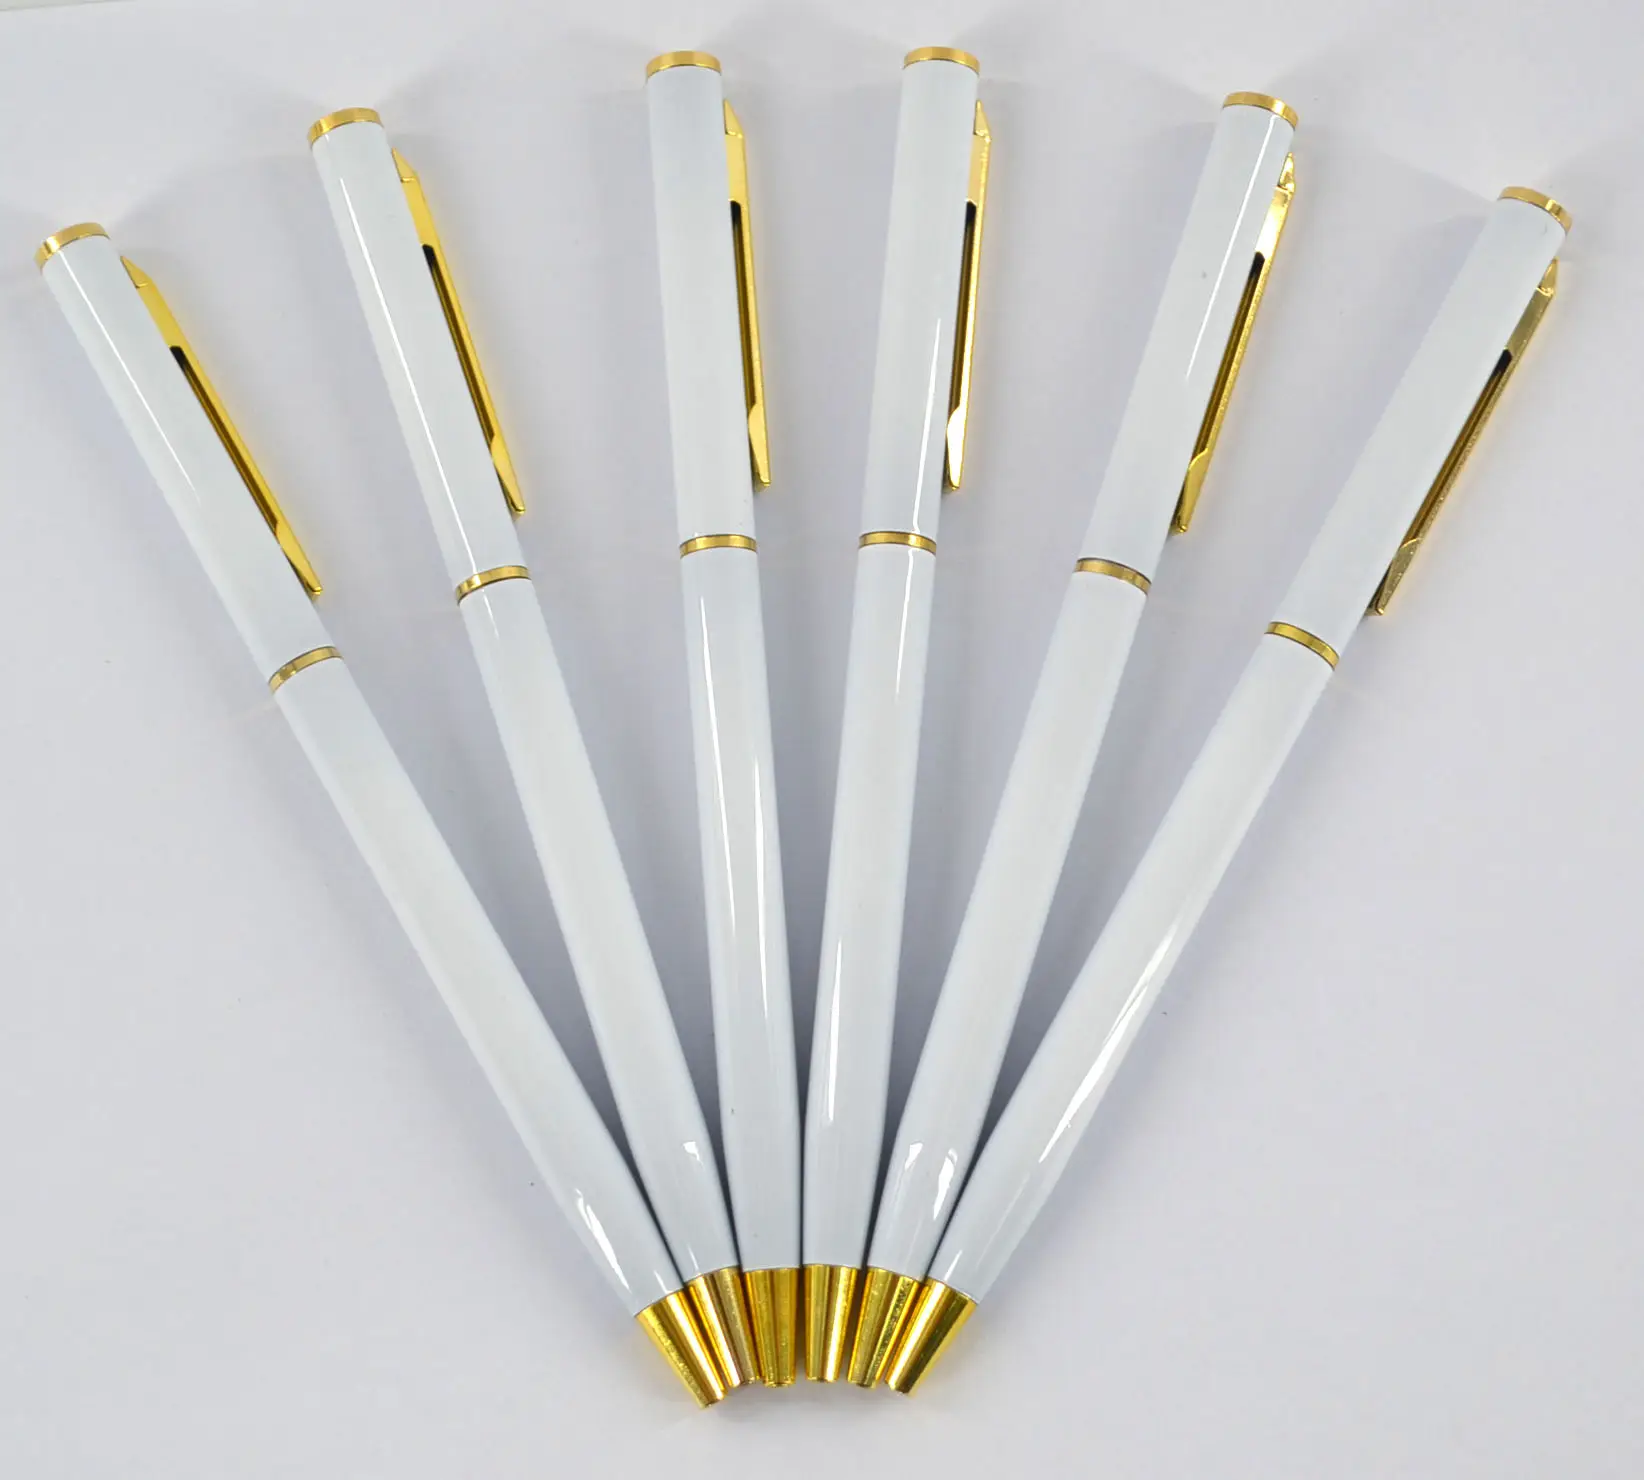 Caneta esferográfica elegante branca pura, caneta de esfera com clipe de aço inoxidável, caneta de escola e escritório em cobre branca e dourada